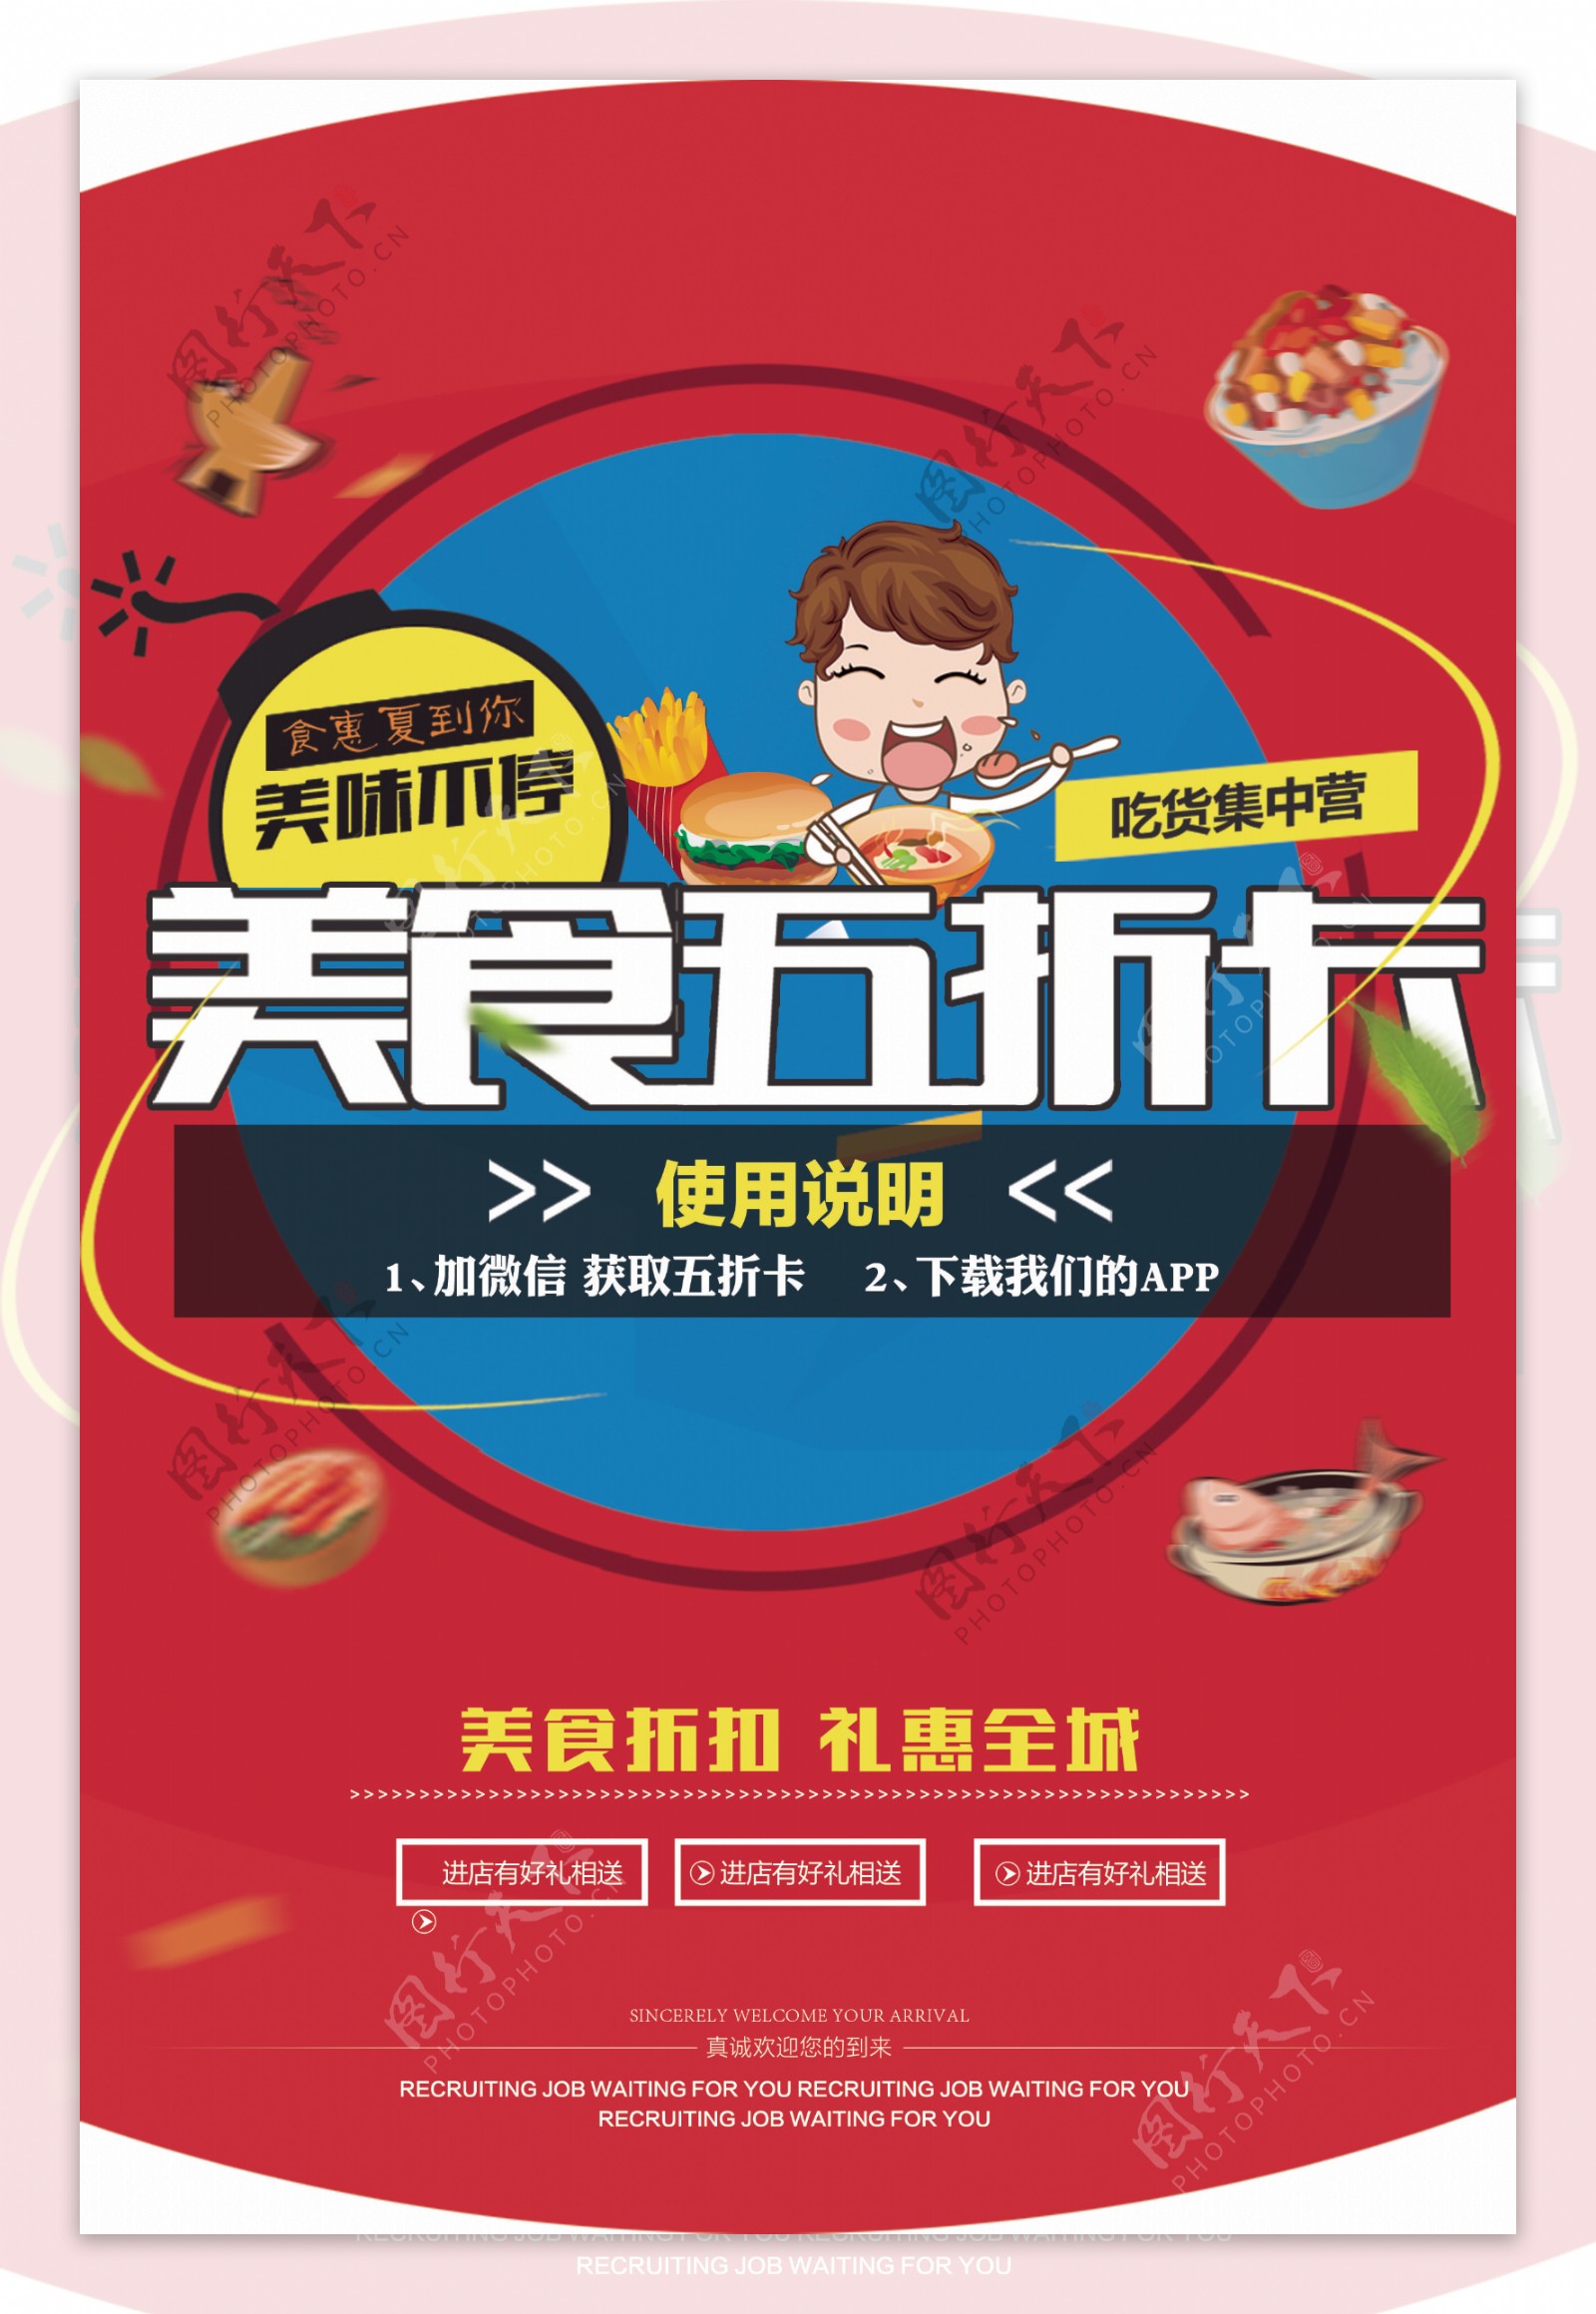 2017炫彩美食促销海报